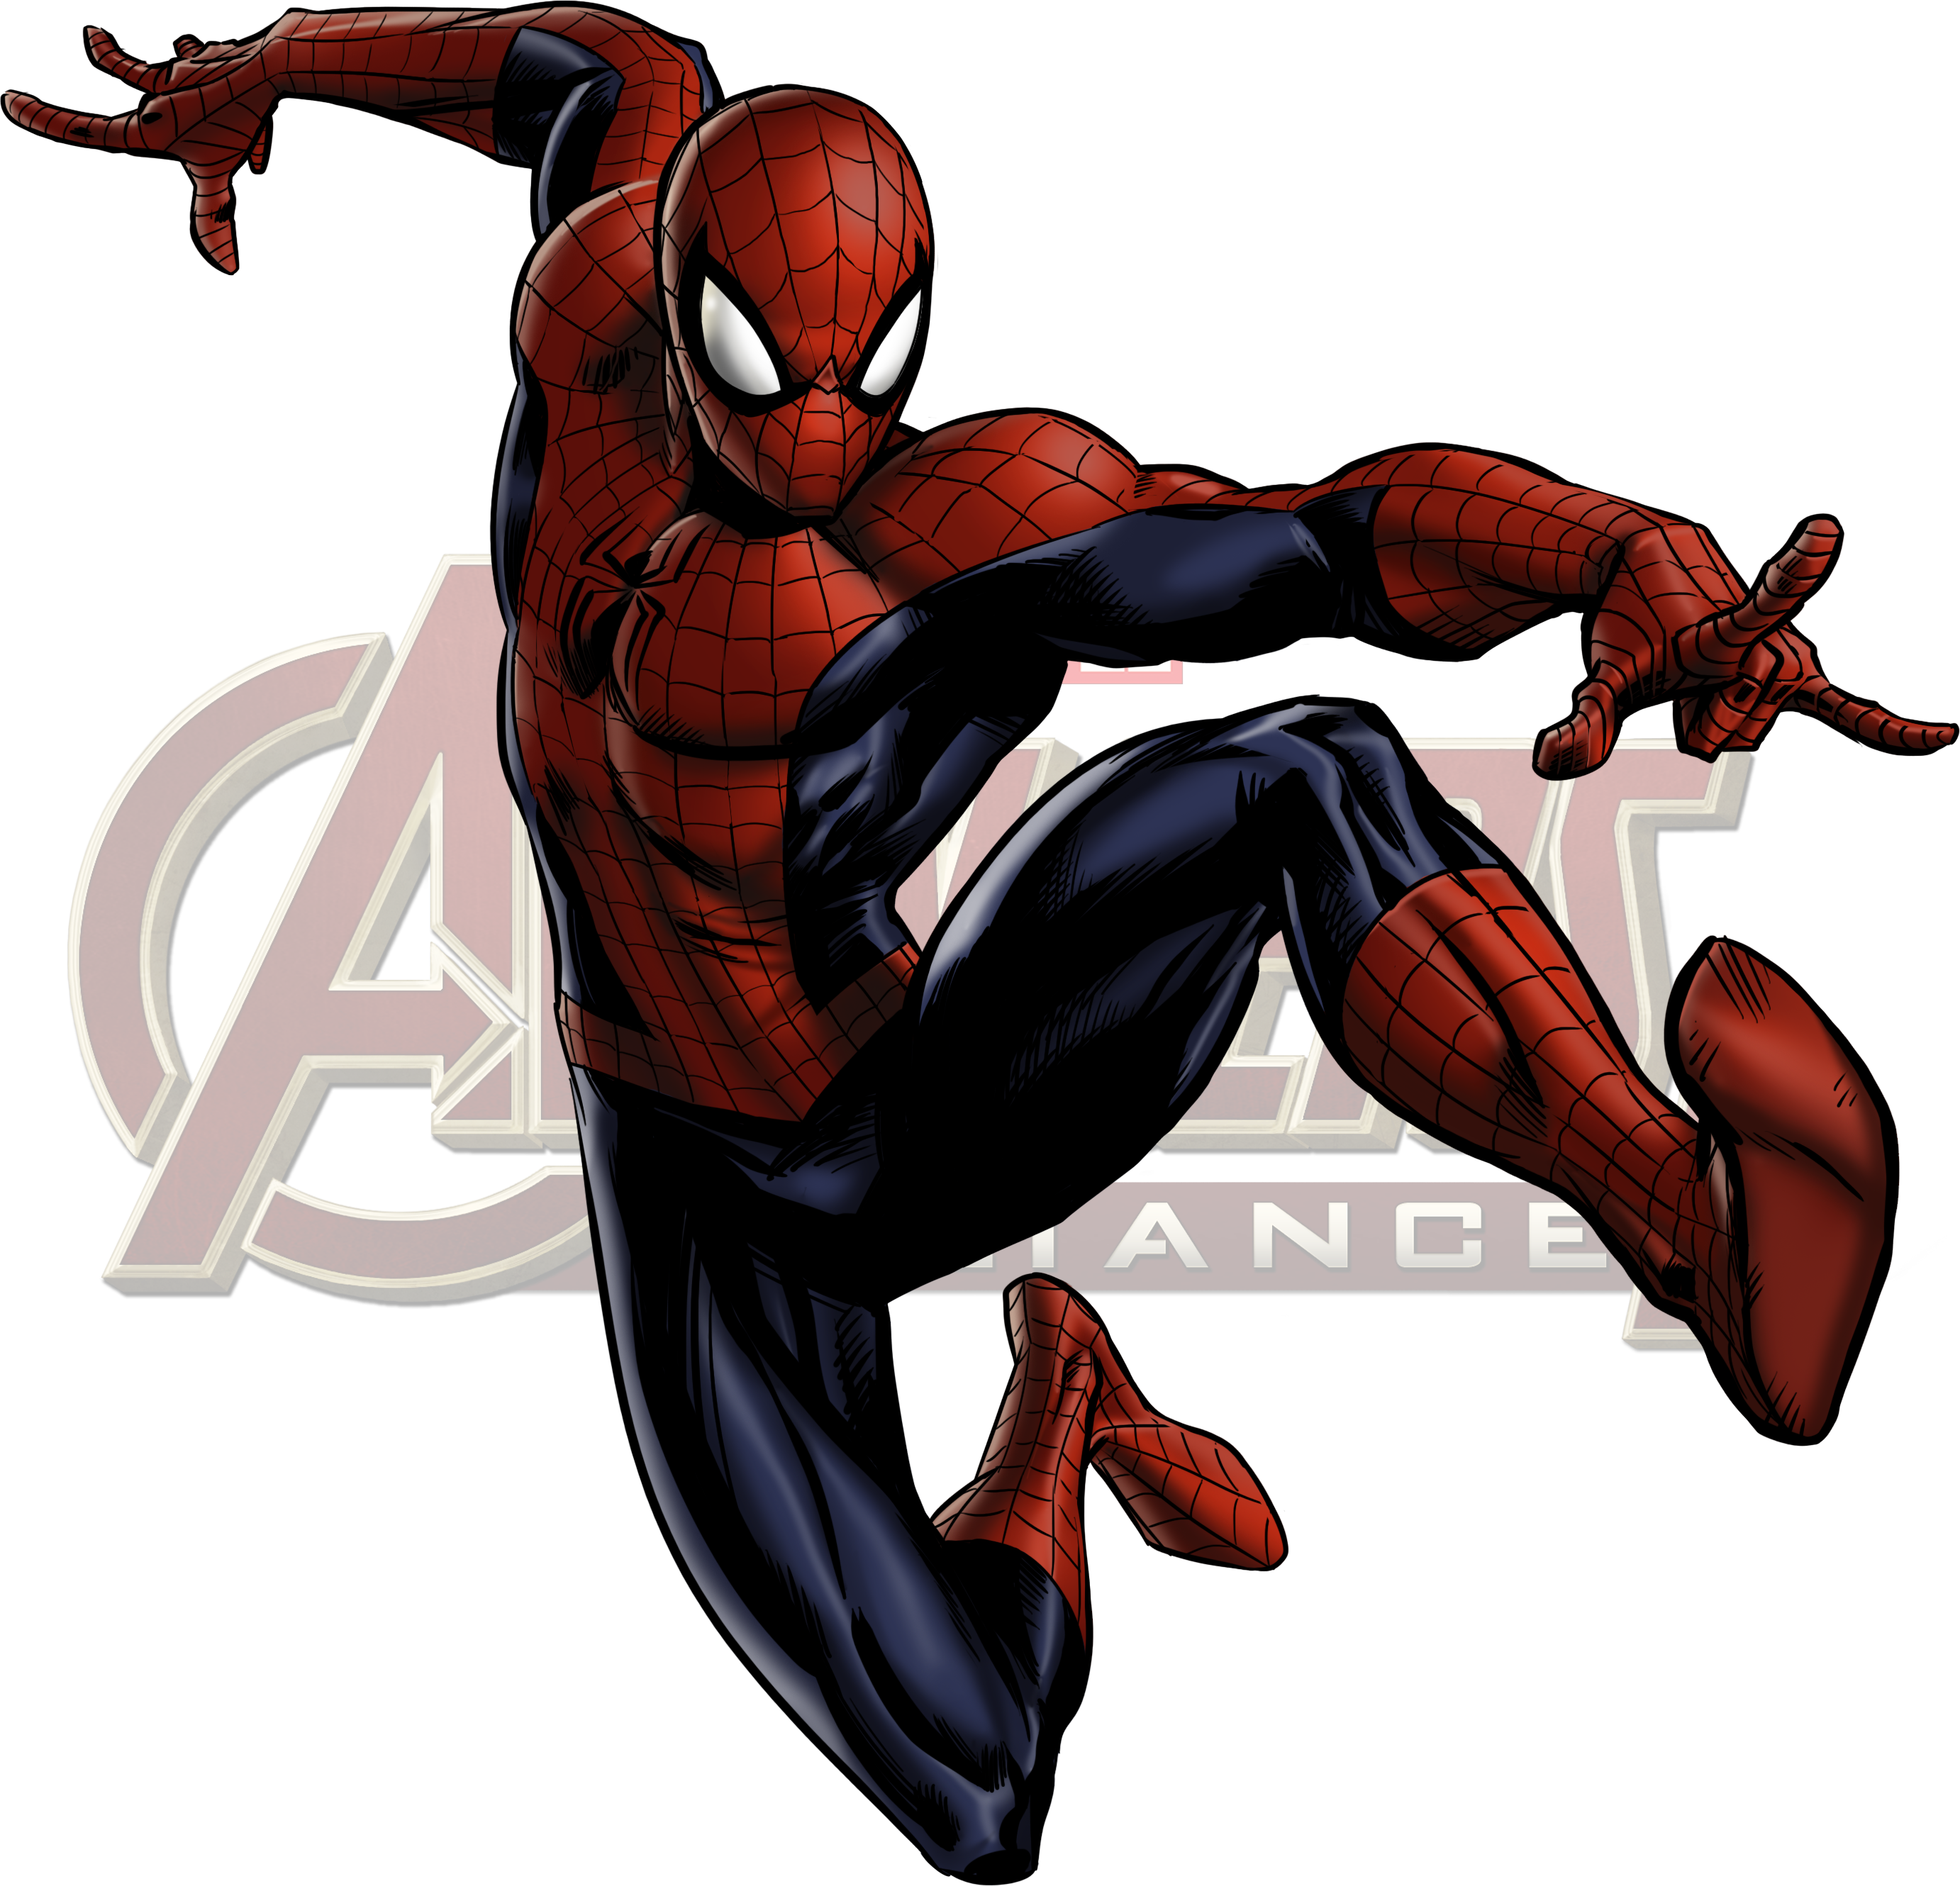 Marvel: Avengers Alliance #21